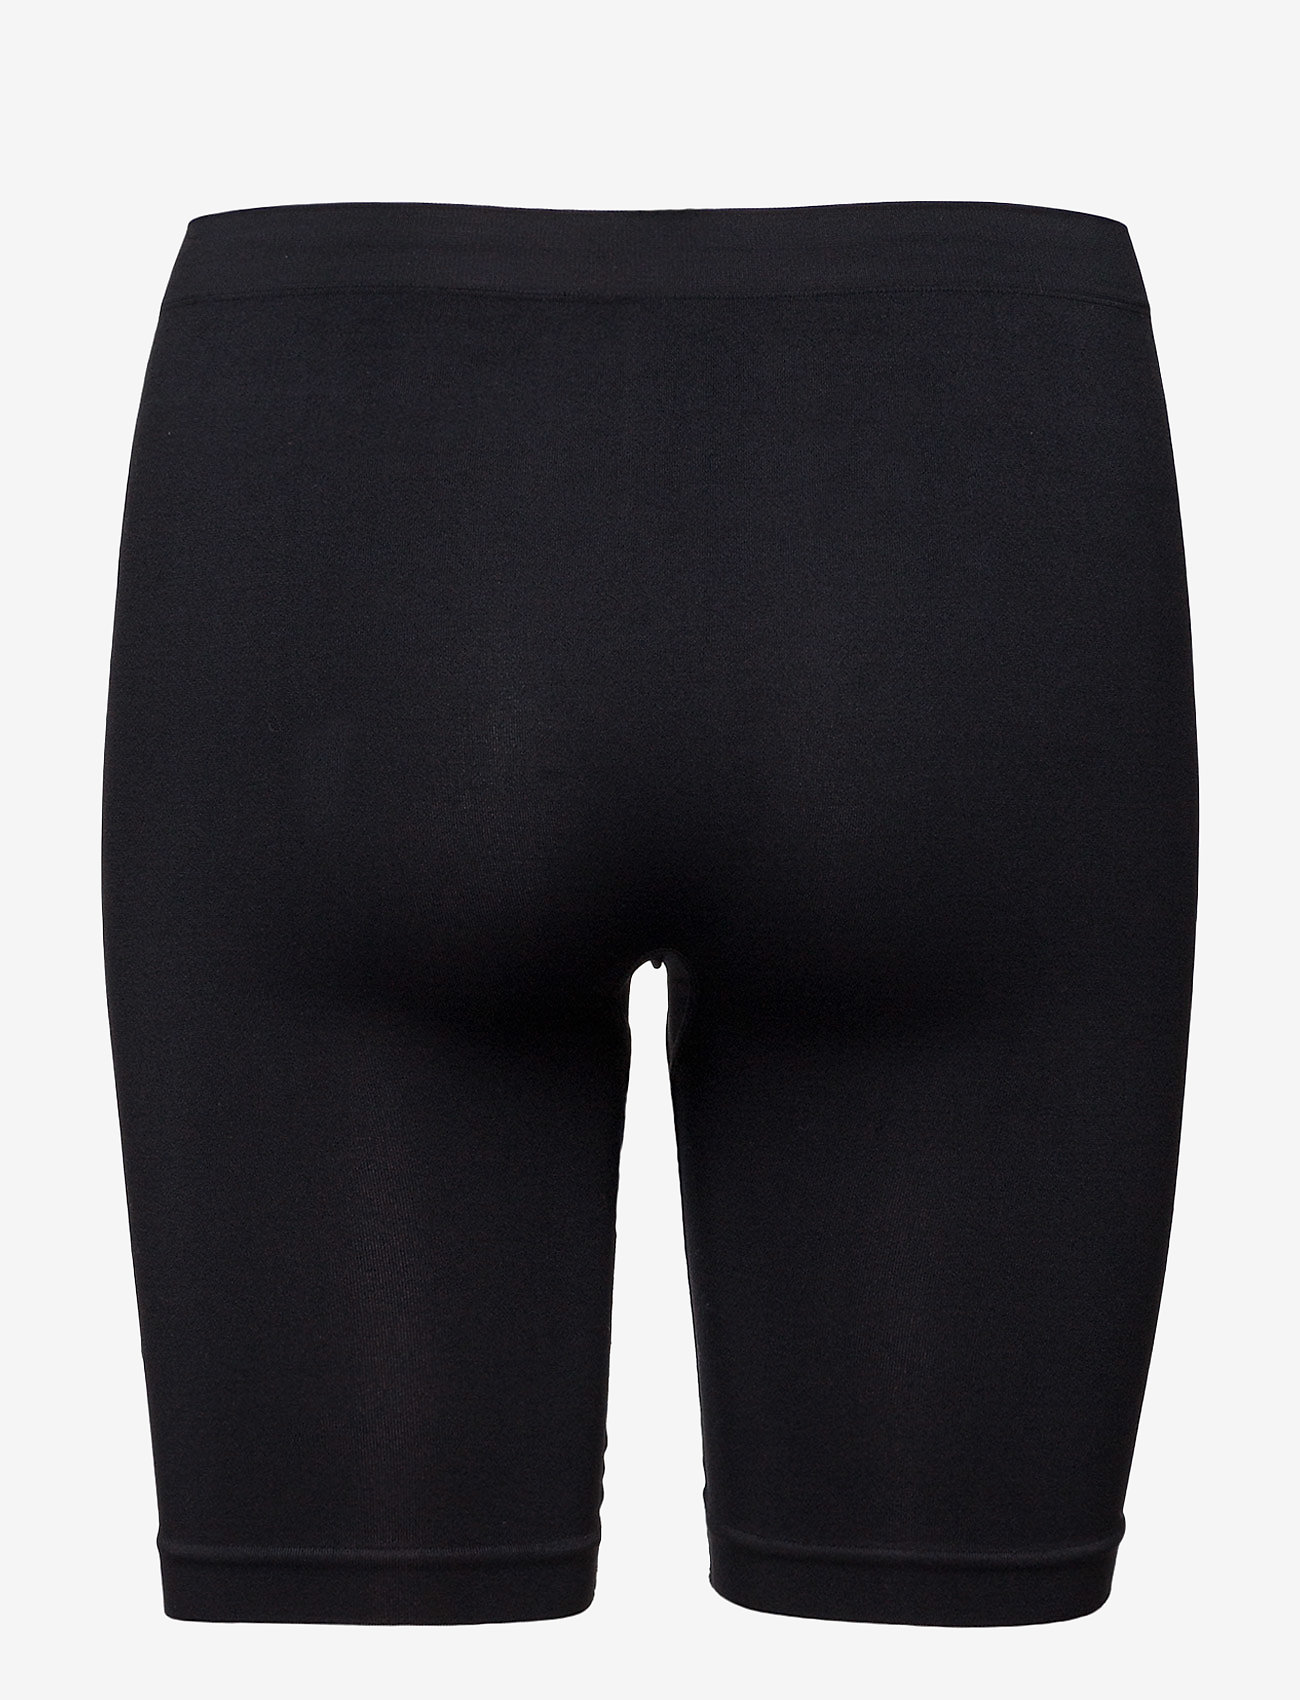 Missya - Lucia long shorts - die niedrigsten preise - black - 1